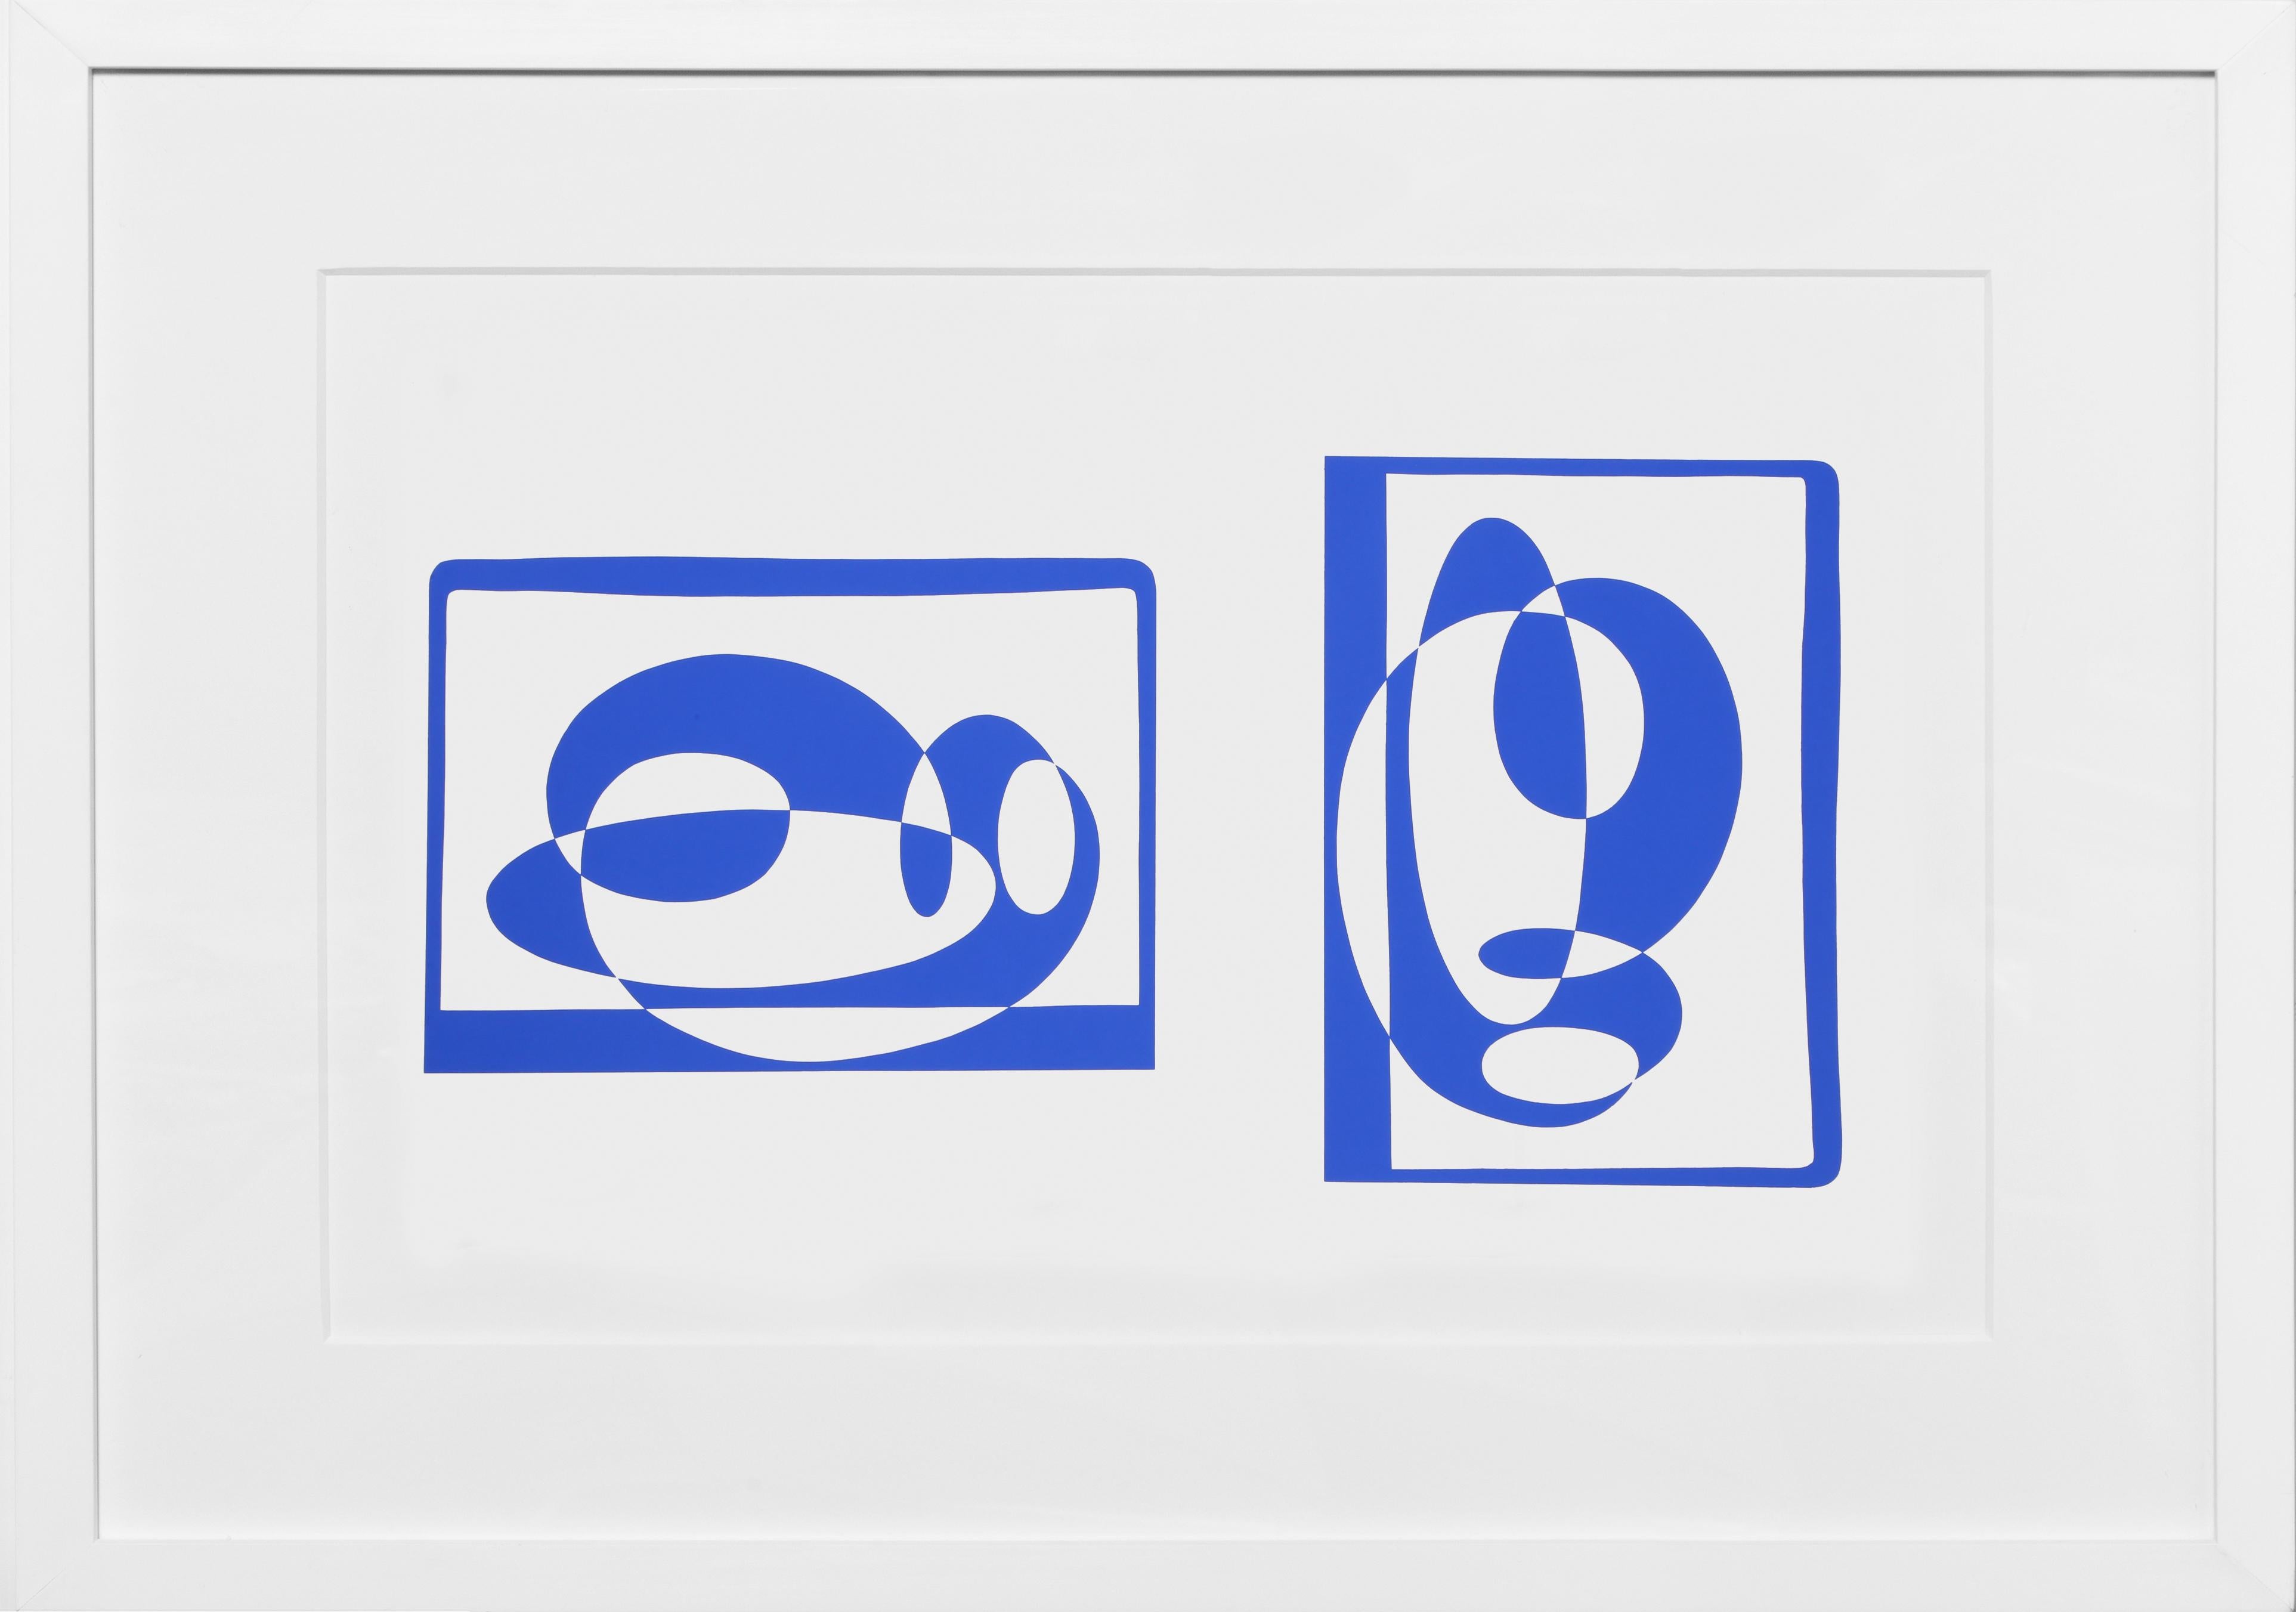 Extrait du portfolio "Formulation : Articulation" créé par Josef Albers en 1972. Cette série monumentale se compose de 127 sérigraphies originales qui constituent une étude définitive des théories les plus importantes de l'artiste en matière de